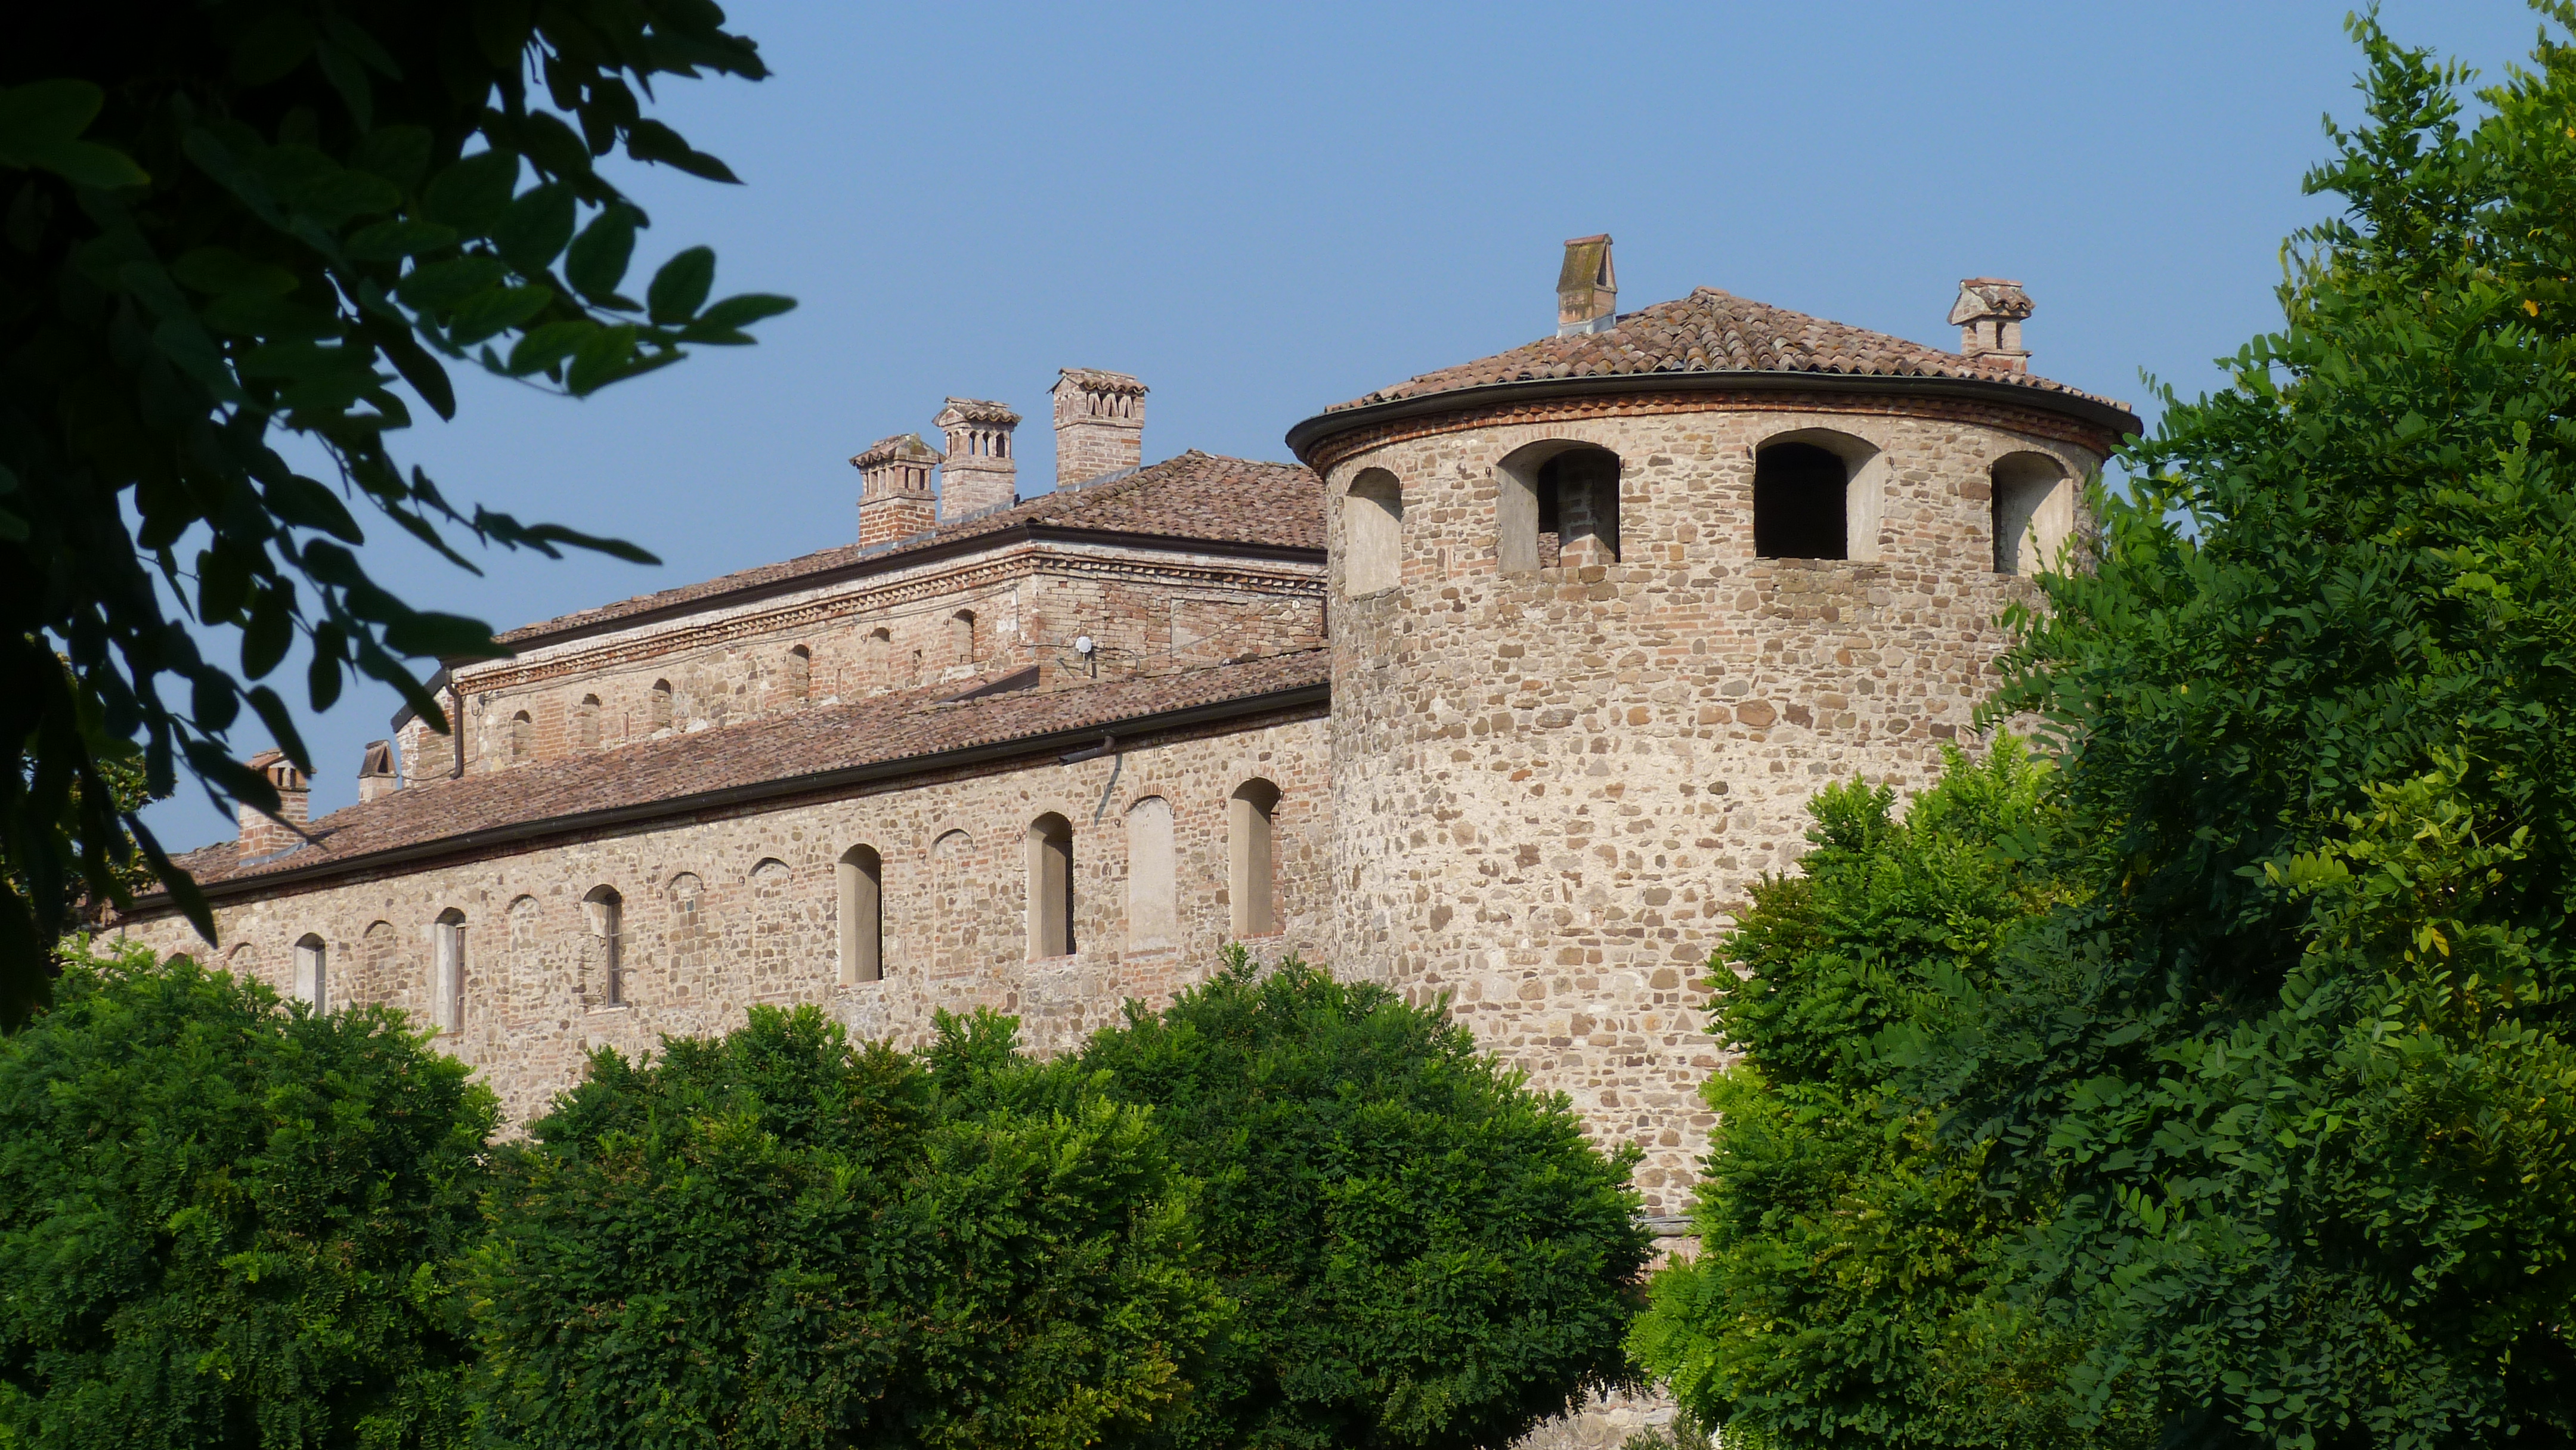 photo: https://upload.wikimedia.org/wikipedia/commons/8/82/Castello_di_Agazzano.JPG